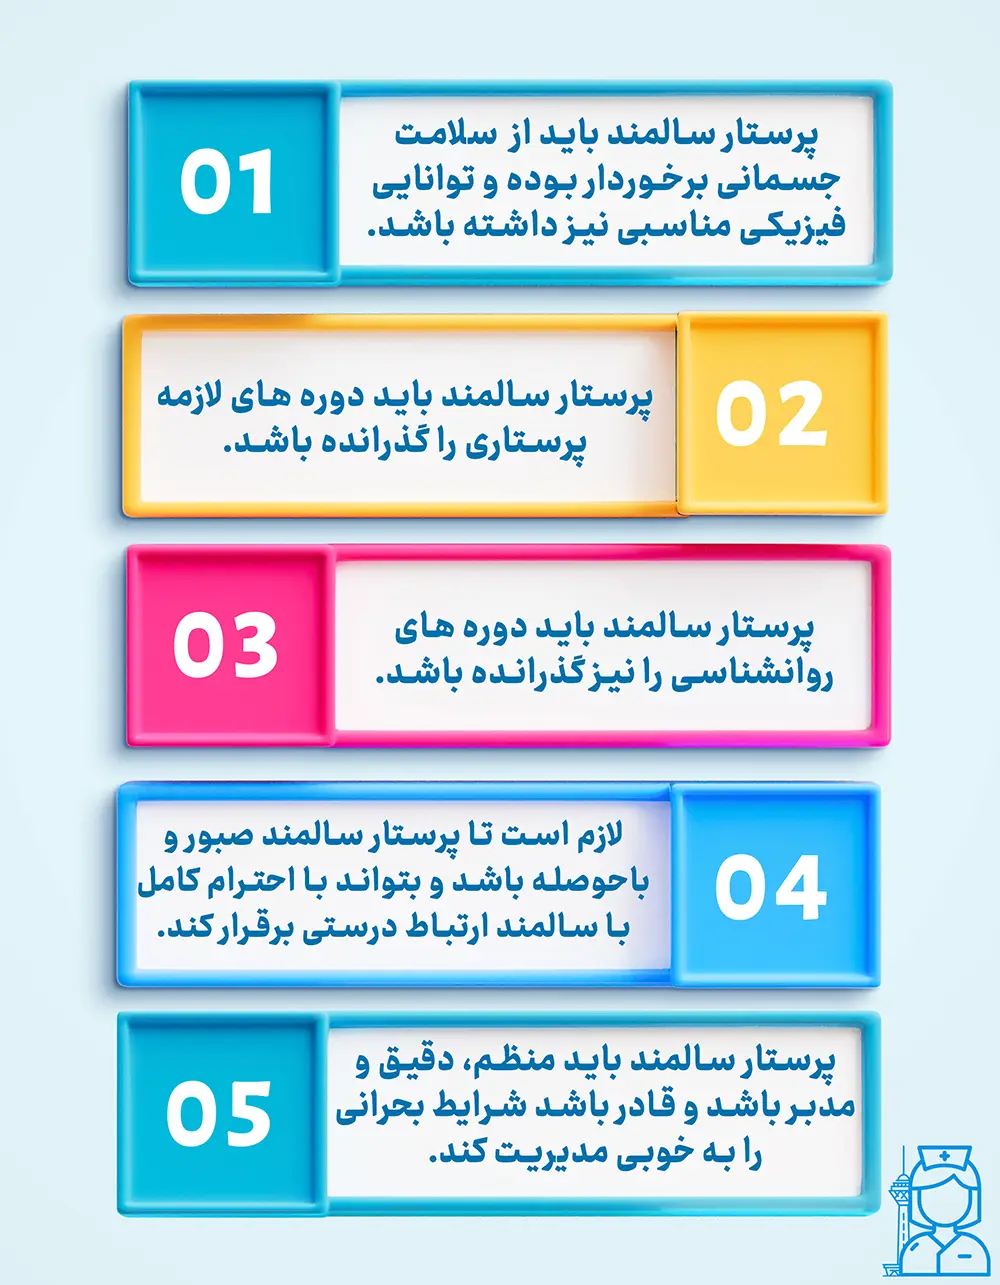 ویژگی های پرستار سالمند در شمال تهران